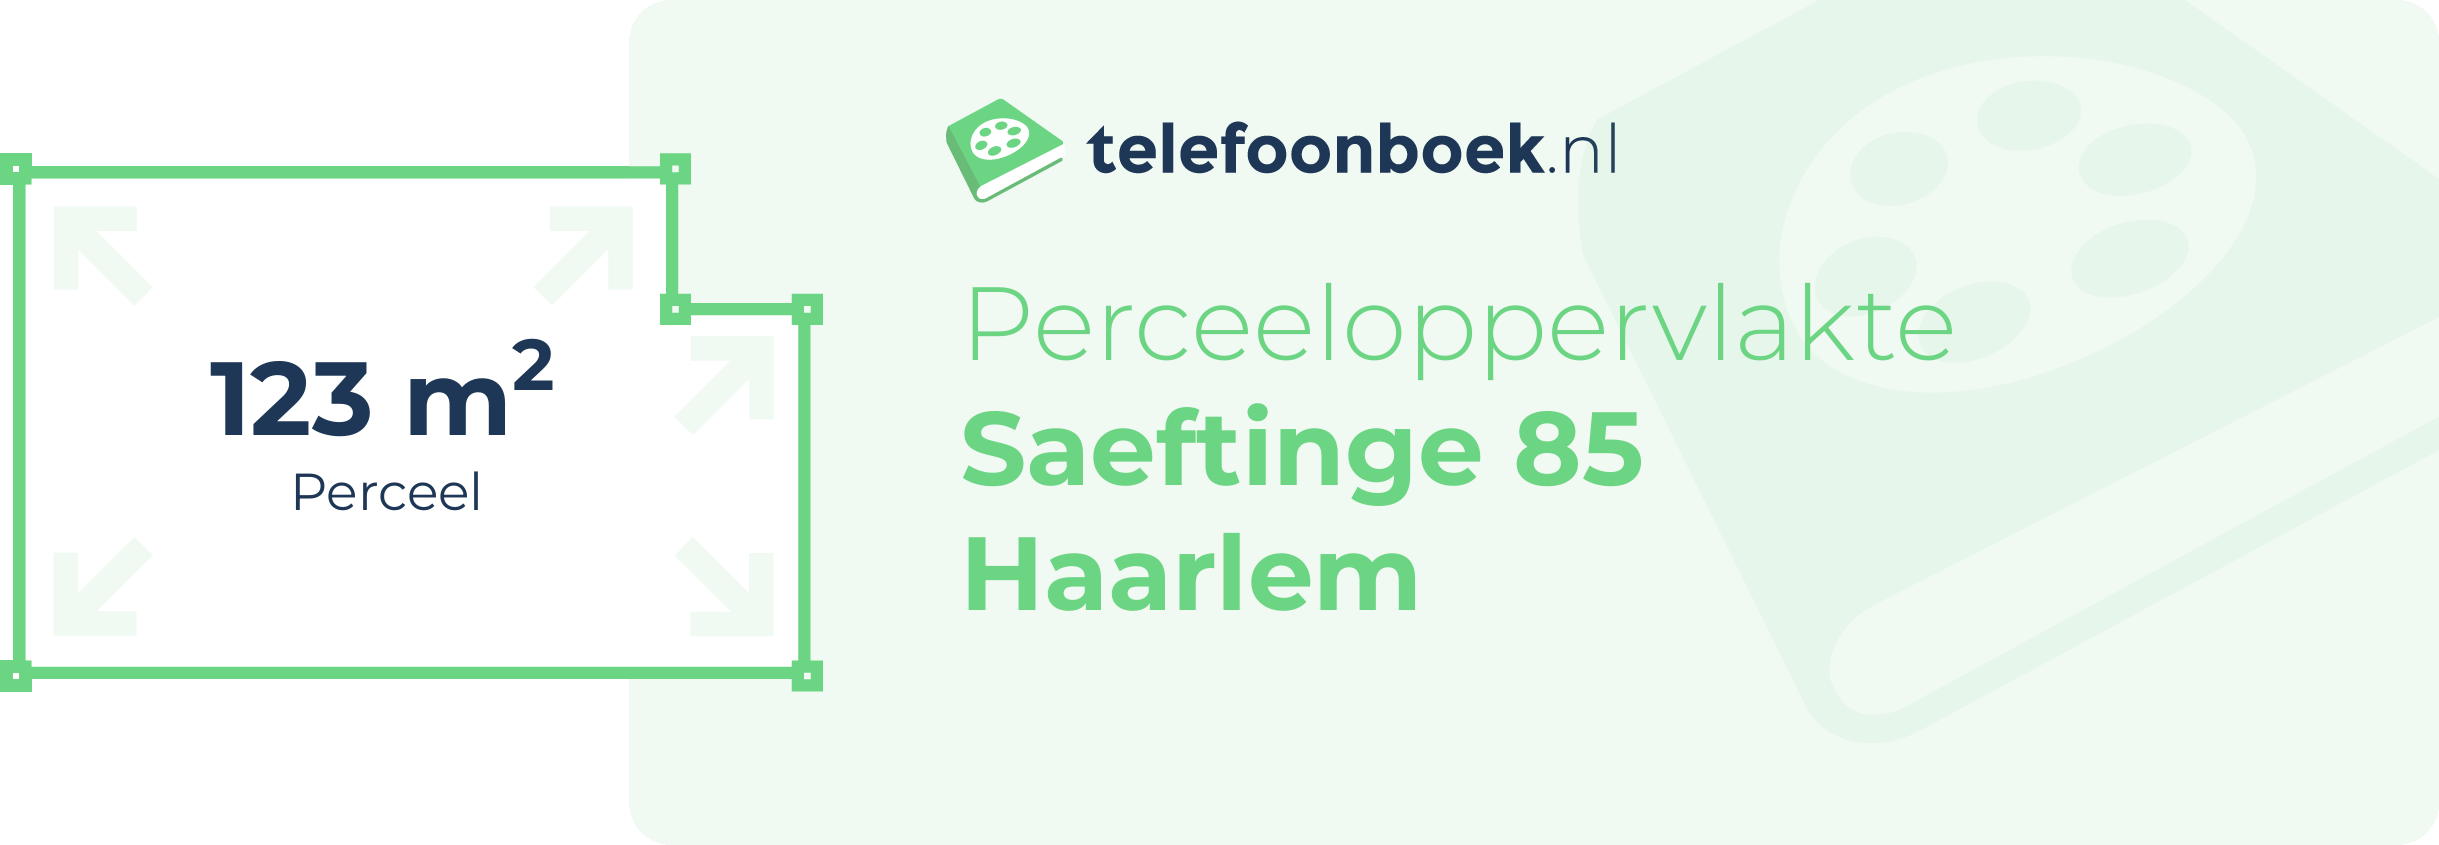 Perceeloppervlakte Saeftinge 85 Haarlem